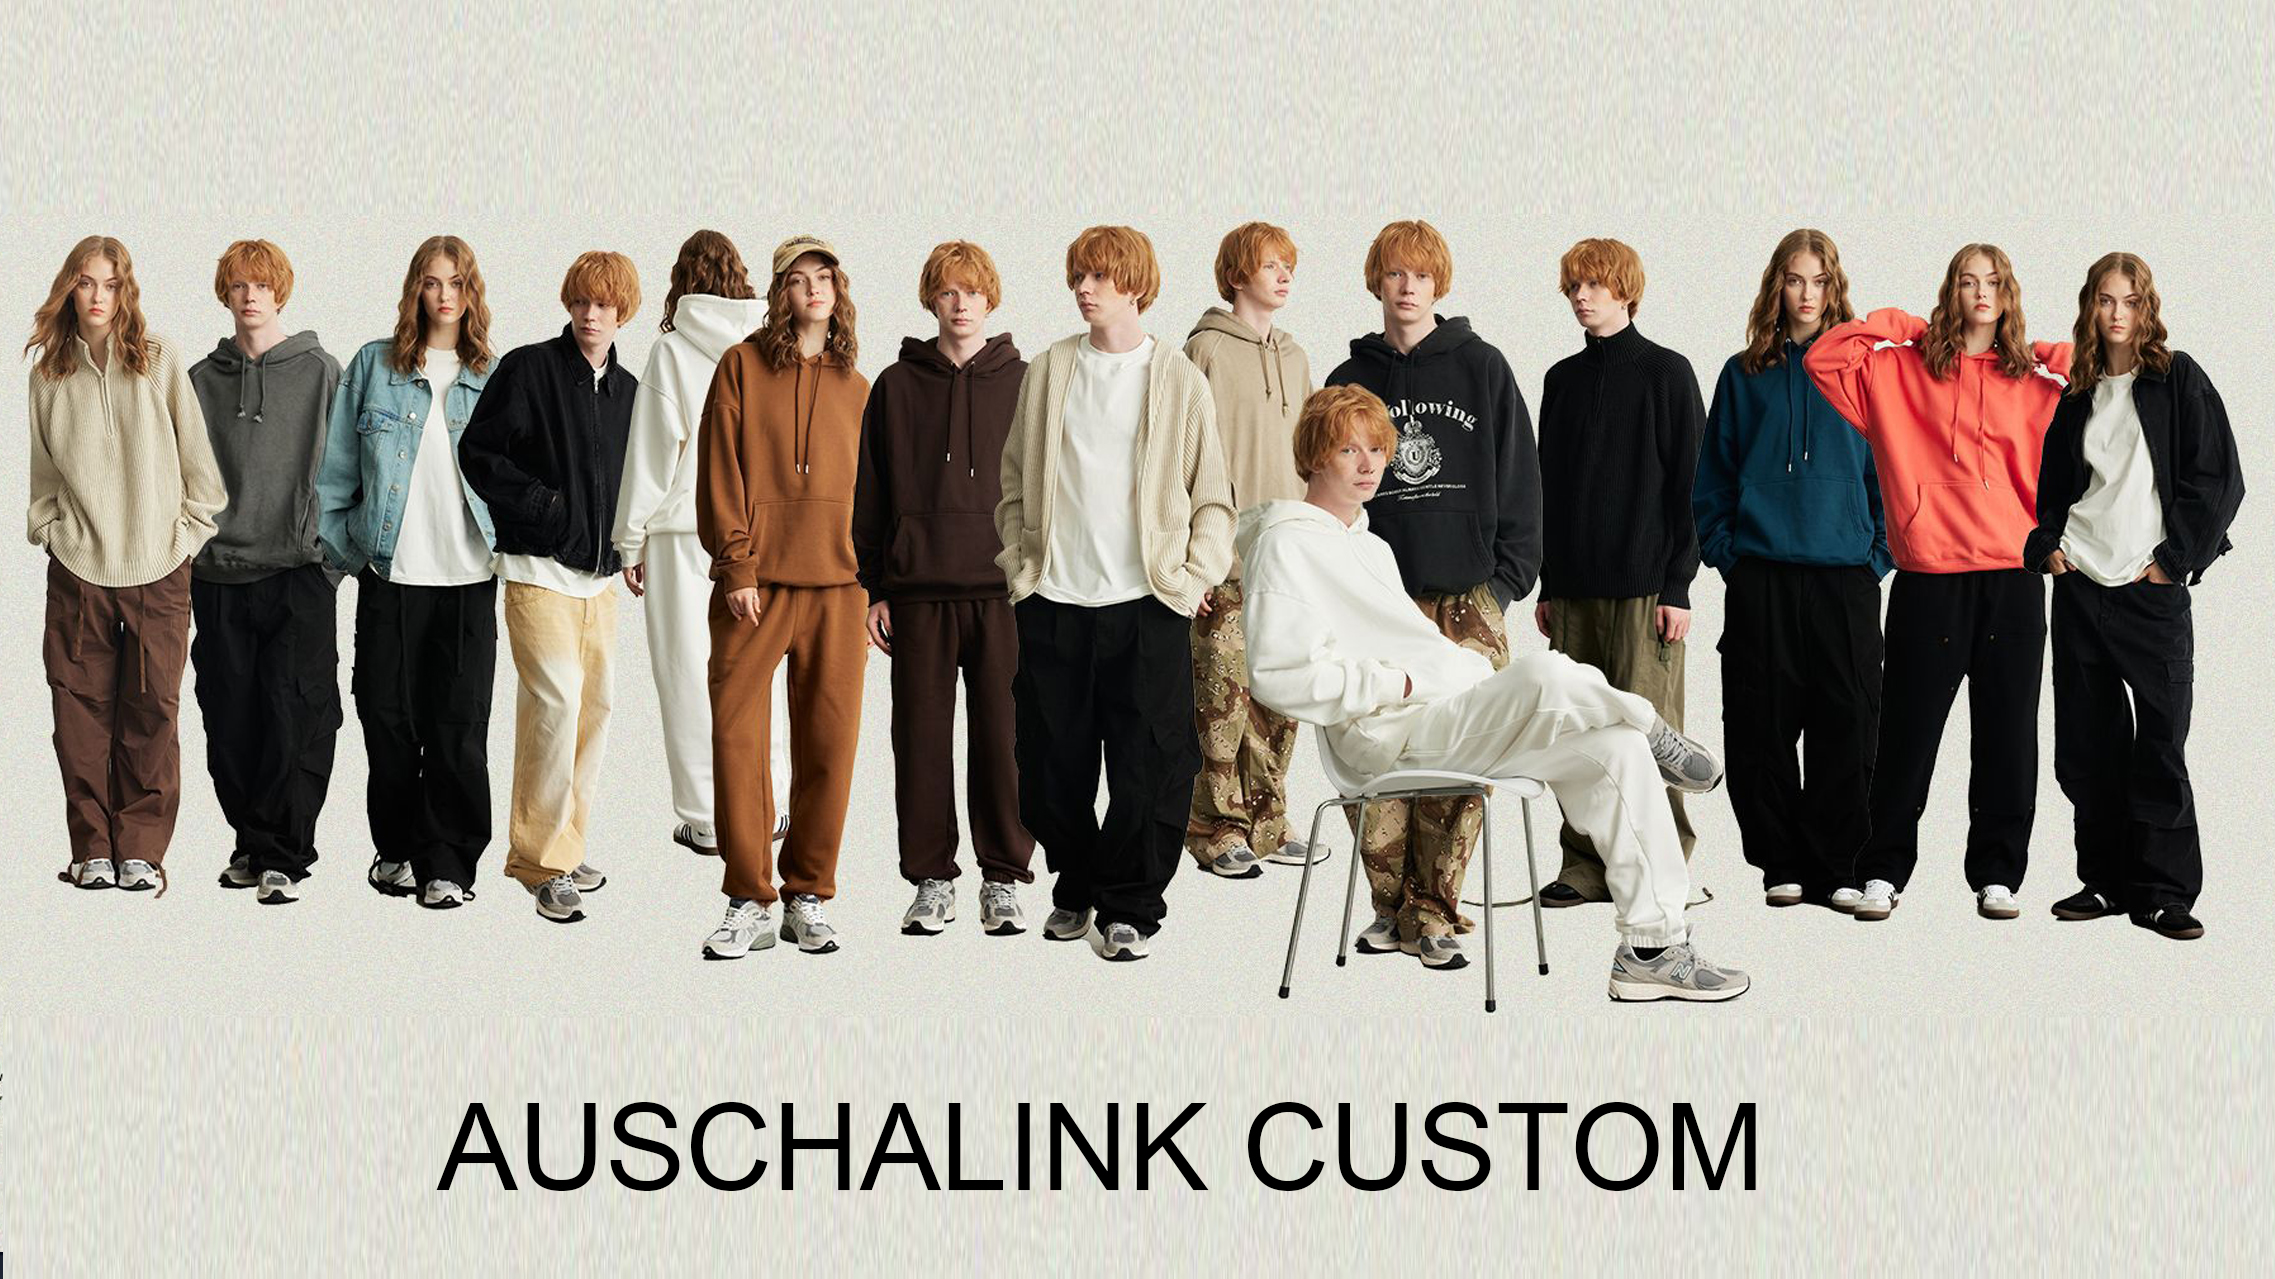 Дэлгүүрийнхээ цамцны HOODIE-г тохируулахын тулд яагаад Auschalink үйлдвэрлэгчийг сонгох хэрэгтэй вэ?